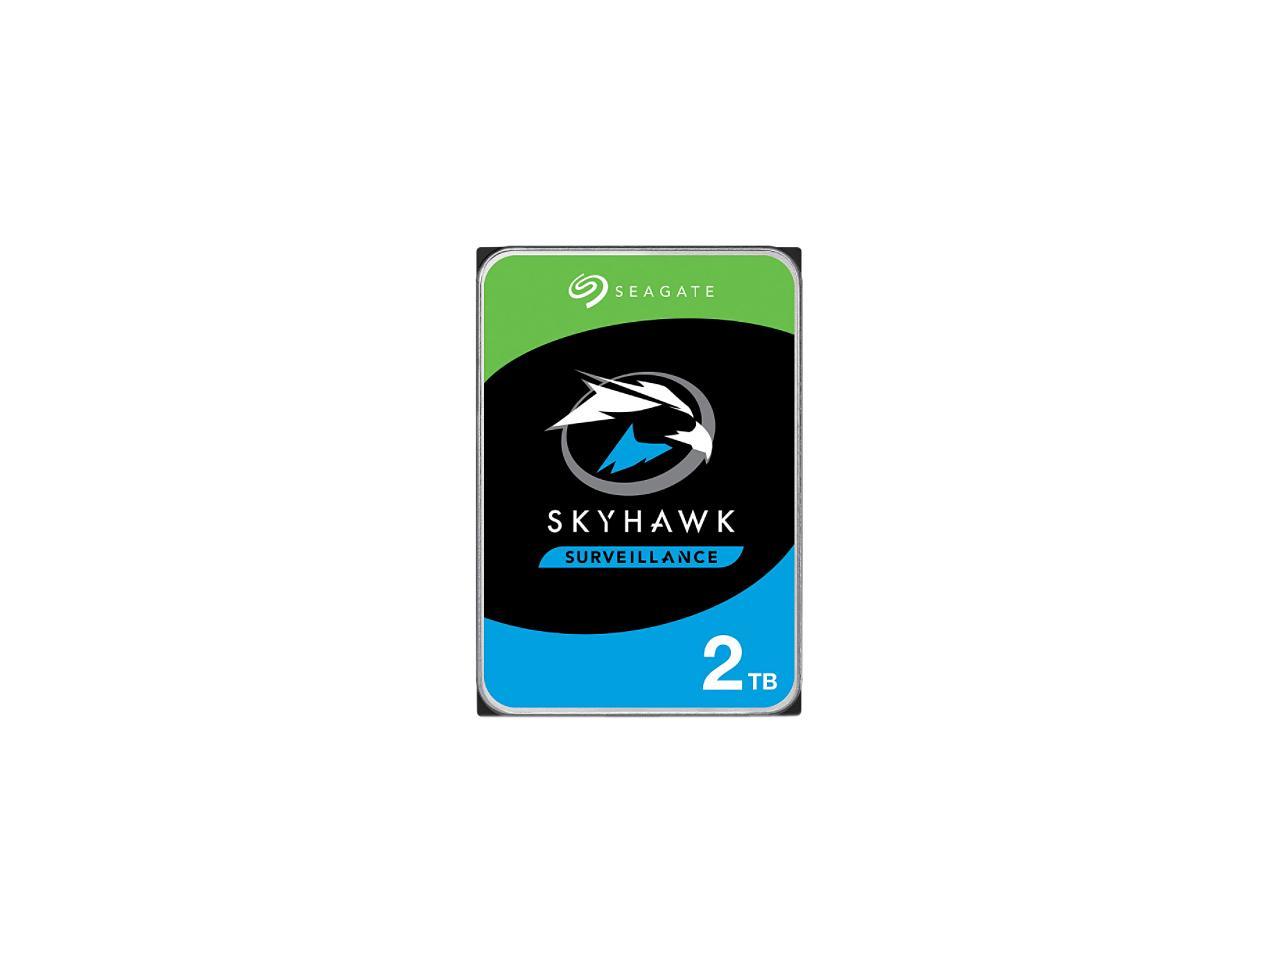 Seagate ST2000VX015 3.5 in. 256 MB & 2TB Skyhawk Surveillance Internal Hard Drive HDD